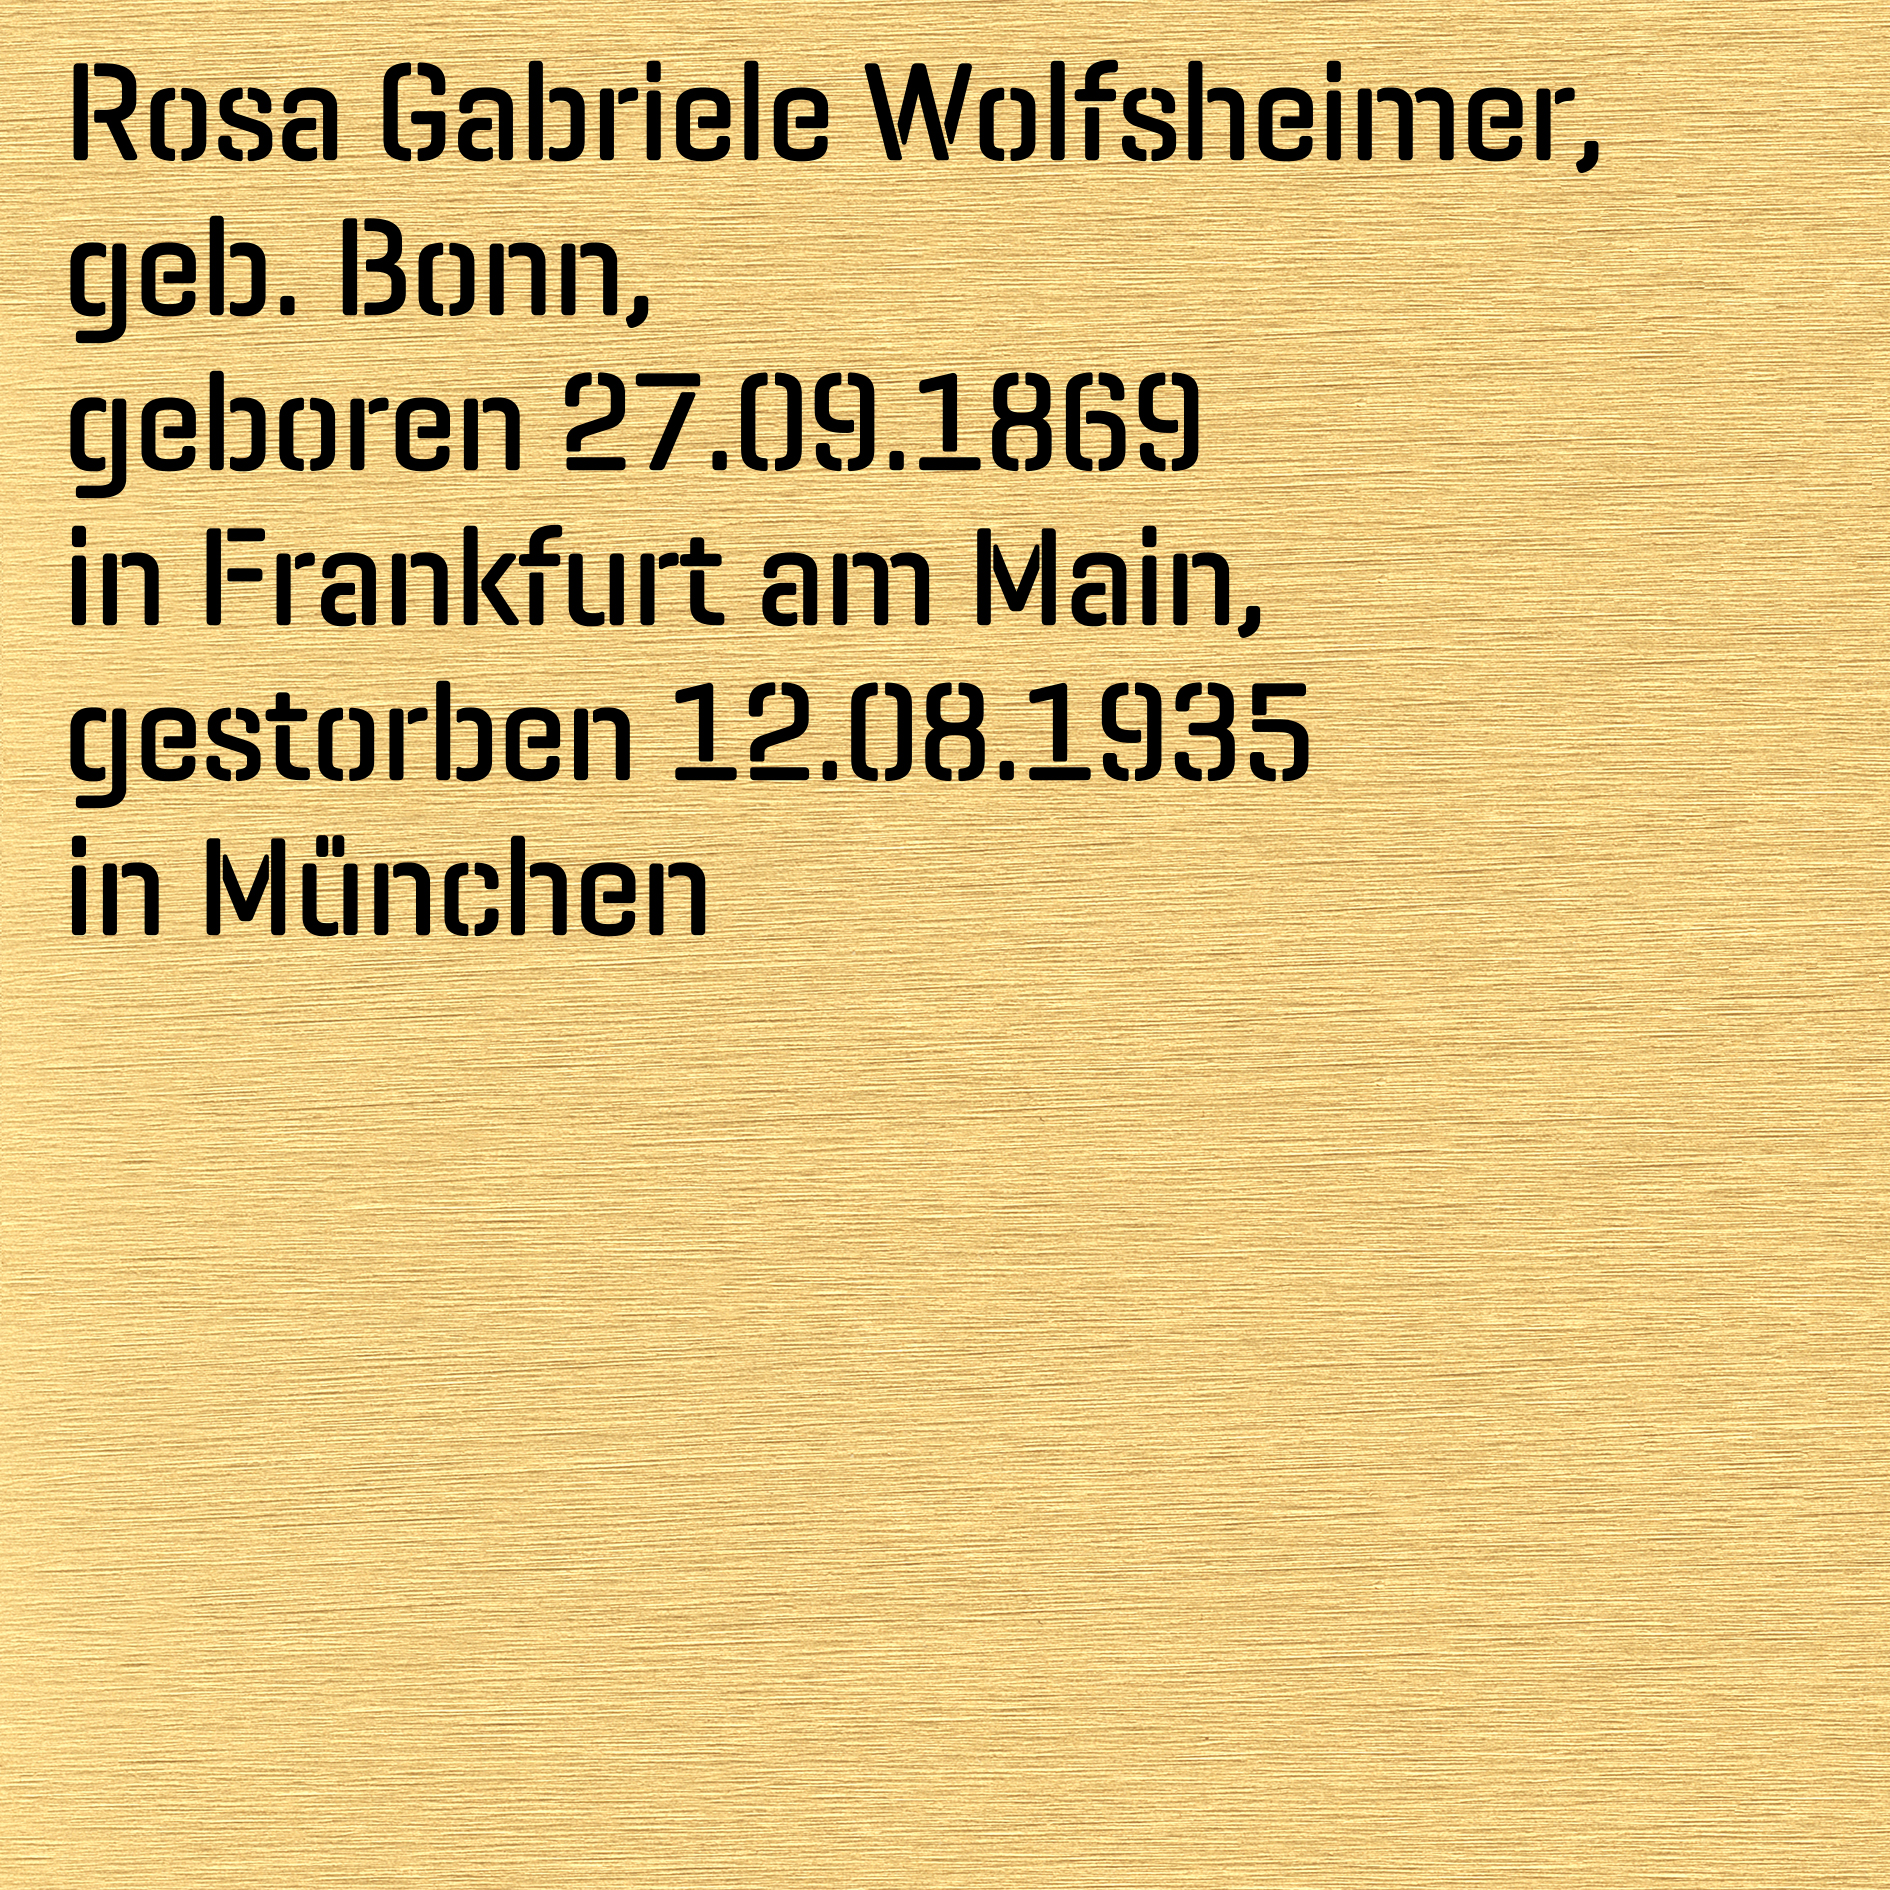 Wolfsheimer